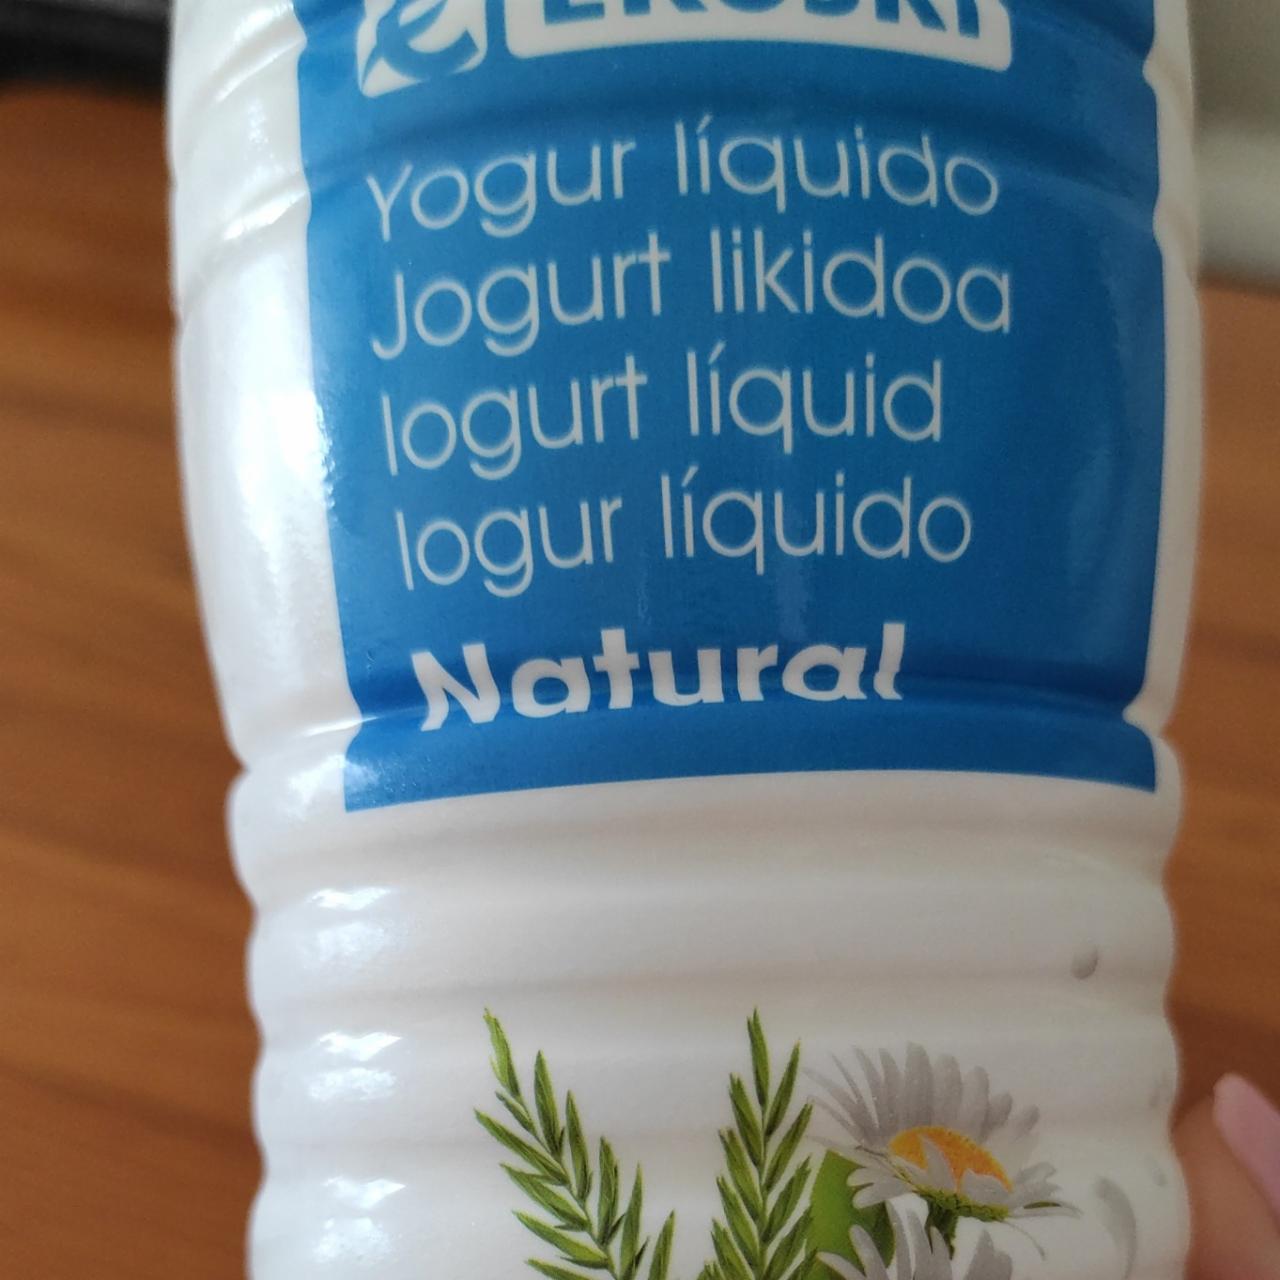 Фото - Йогурт питьевой натуральный Yogur natural Eroski